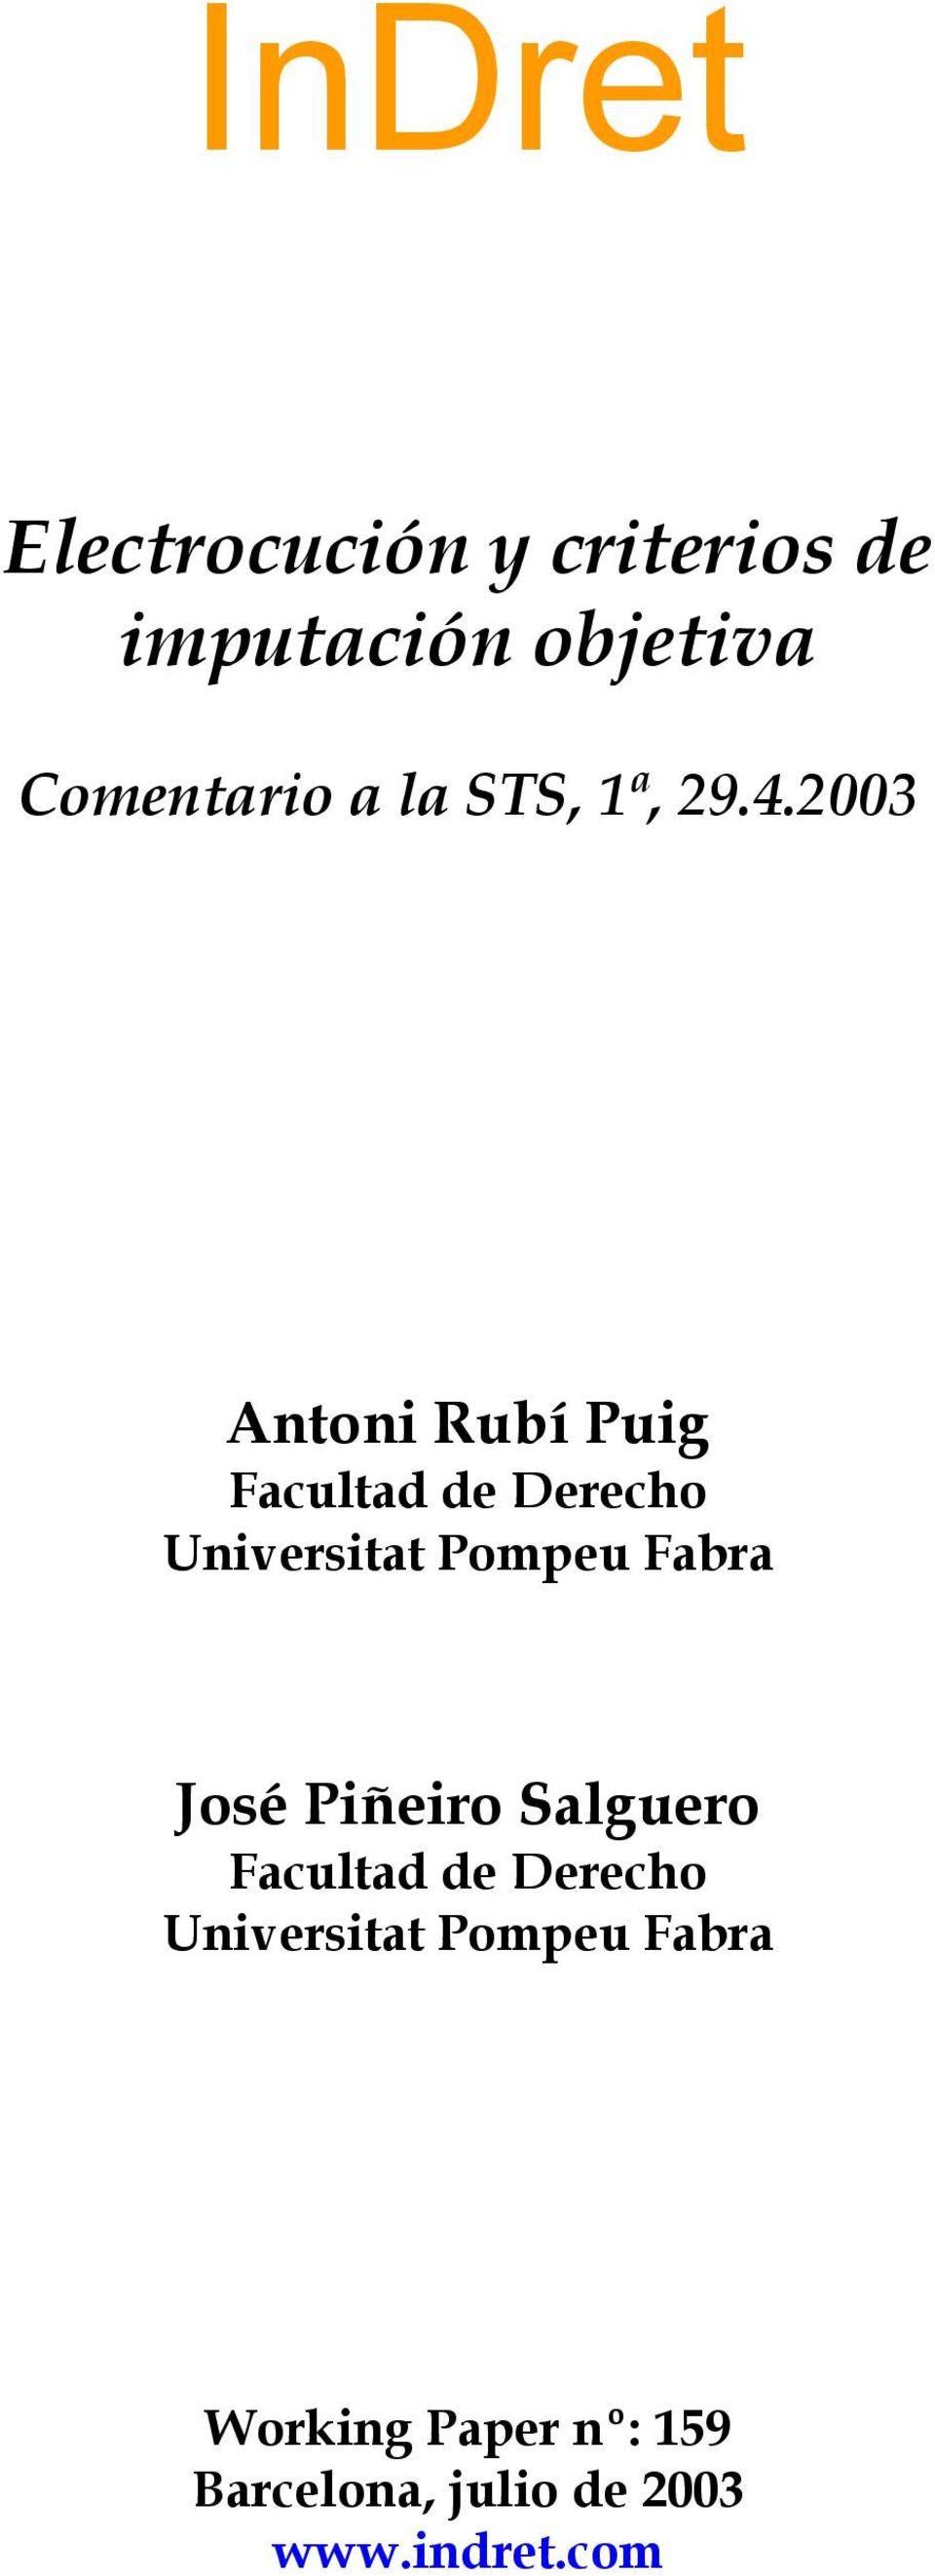 2003 Antoni Rubí Puig Facultad de Derecho Universitat Pompeu Fabra